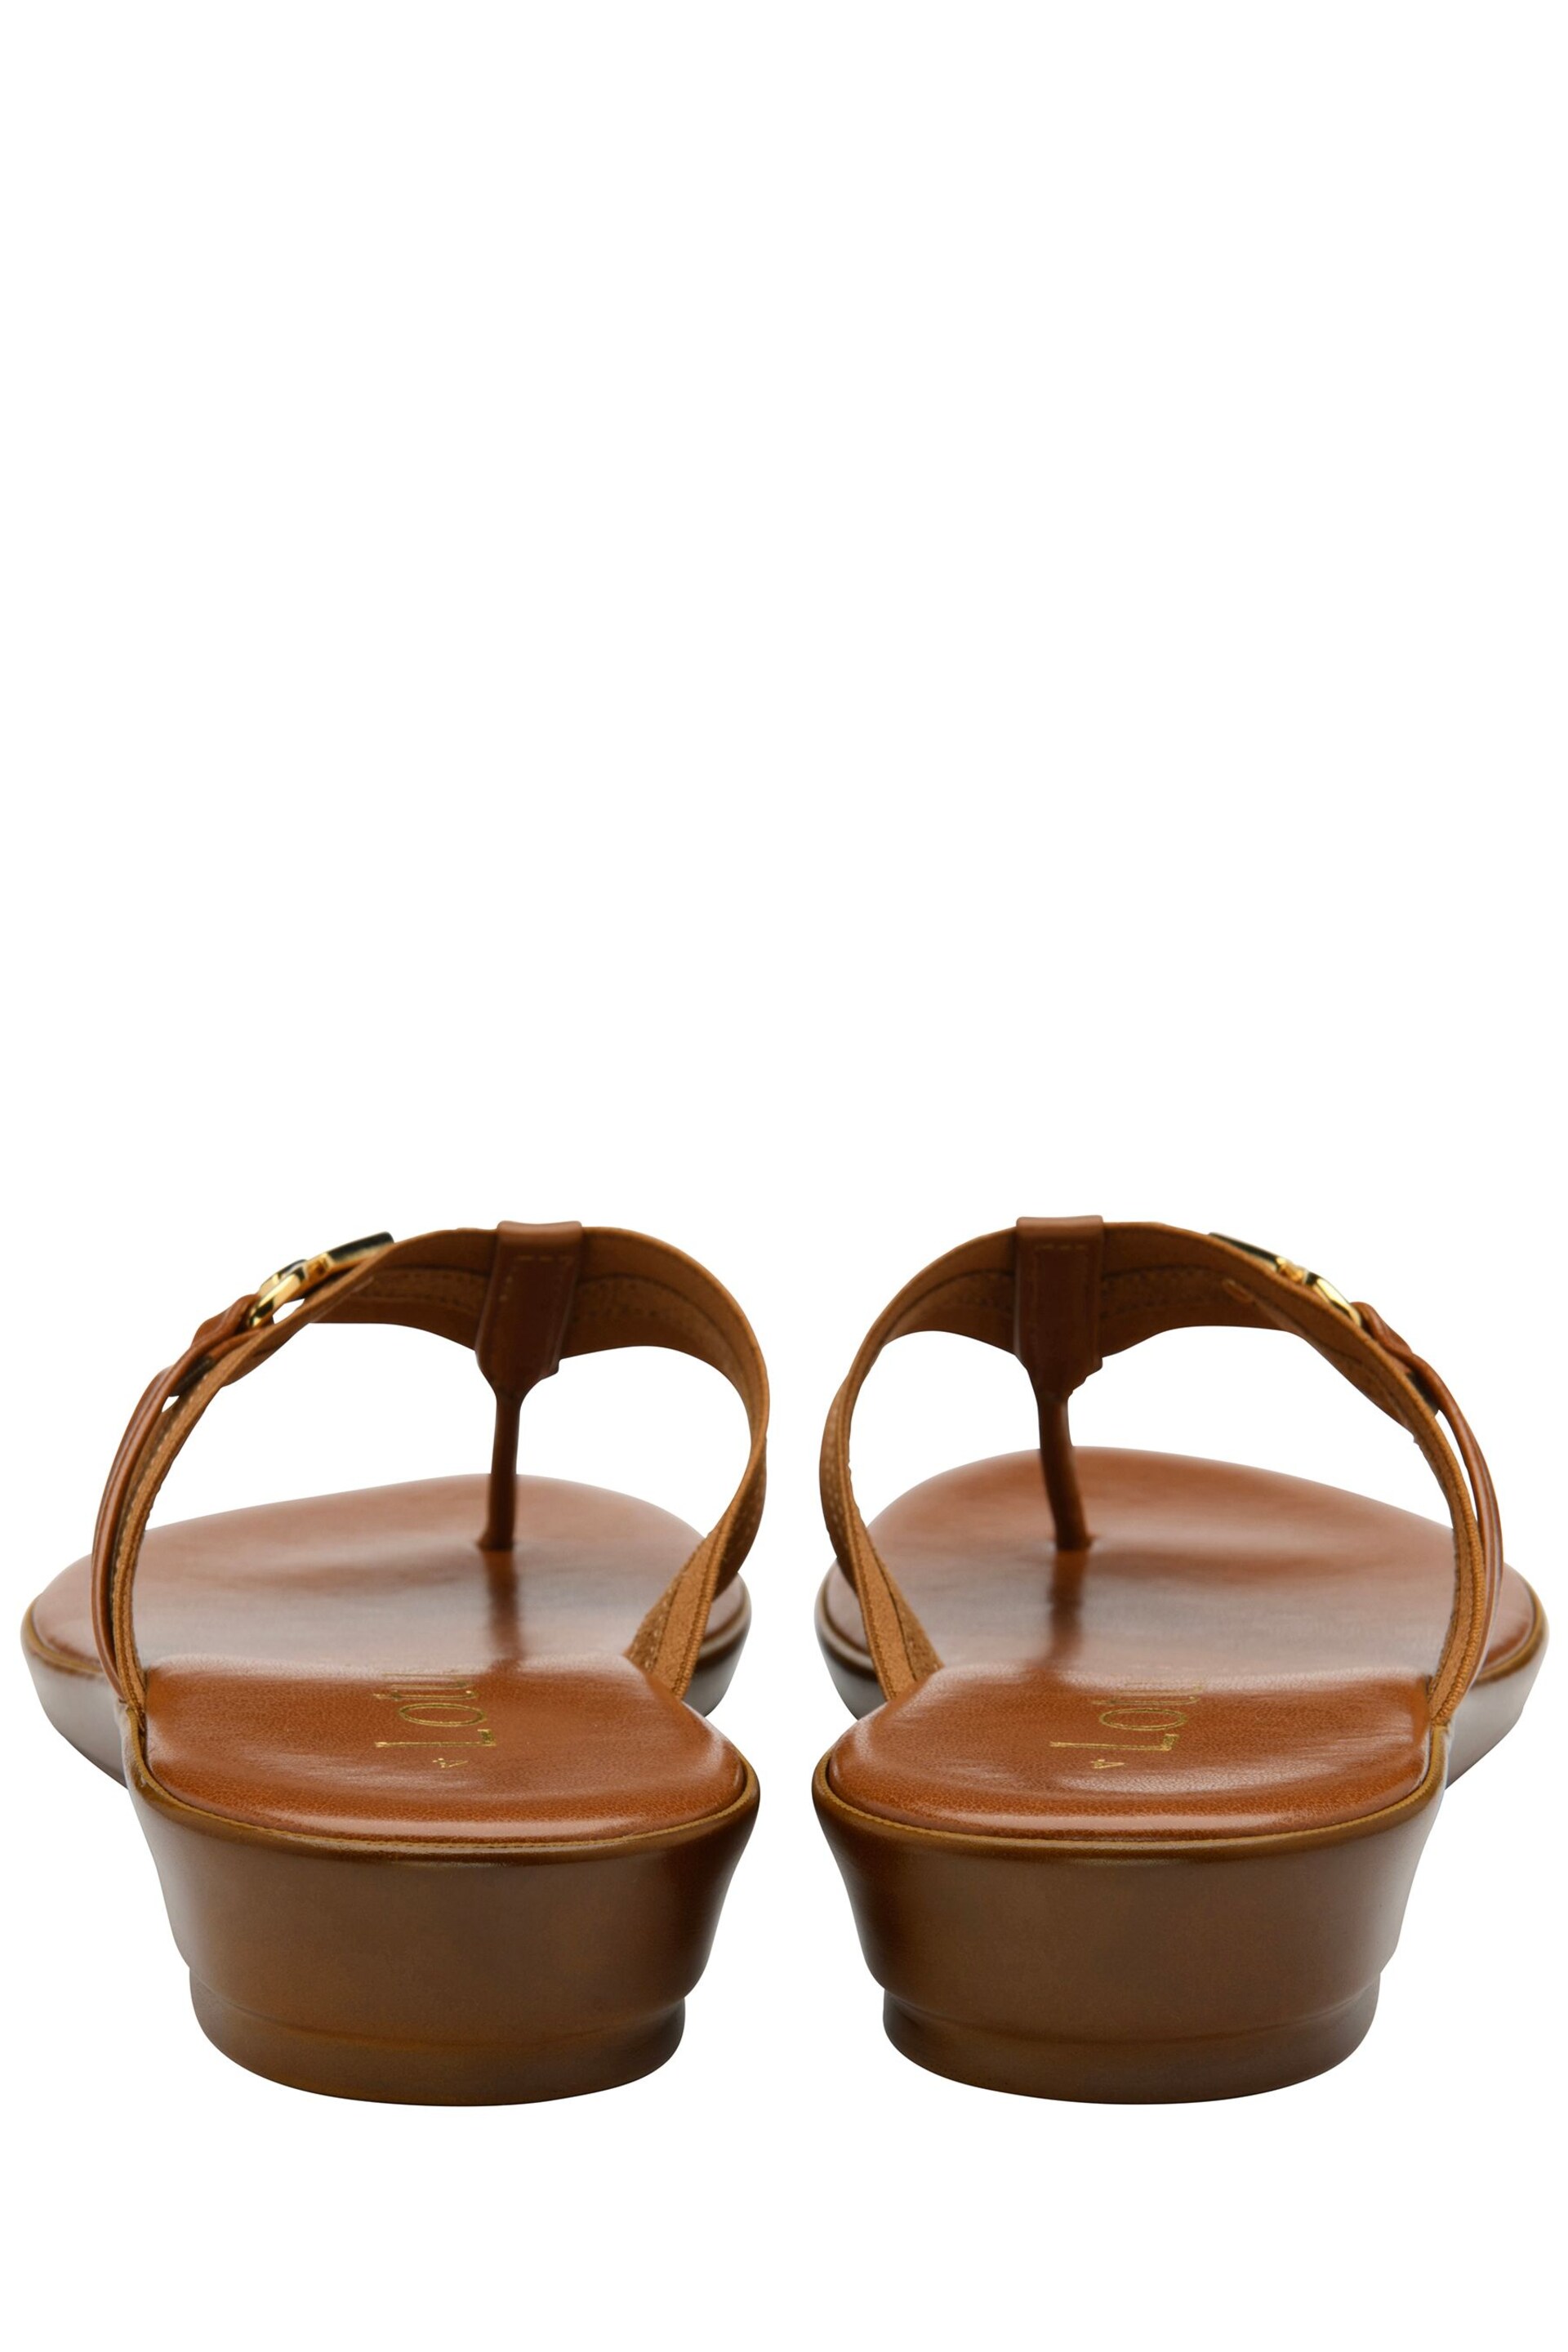 Lotus Brown Toe-Post Sandals - Image 3 of 4